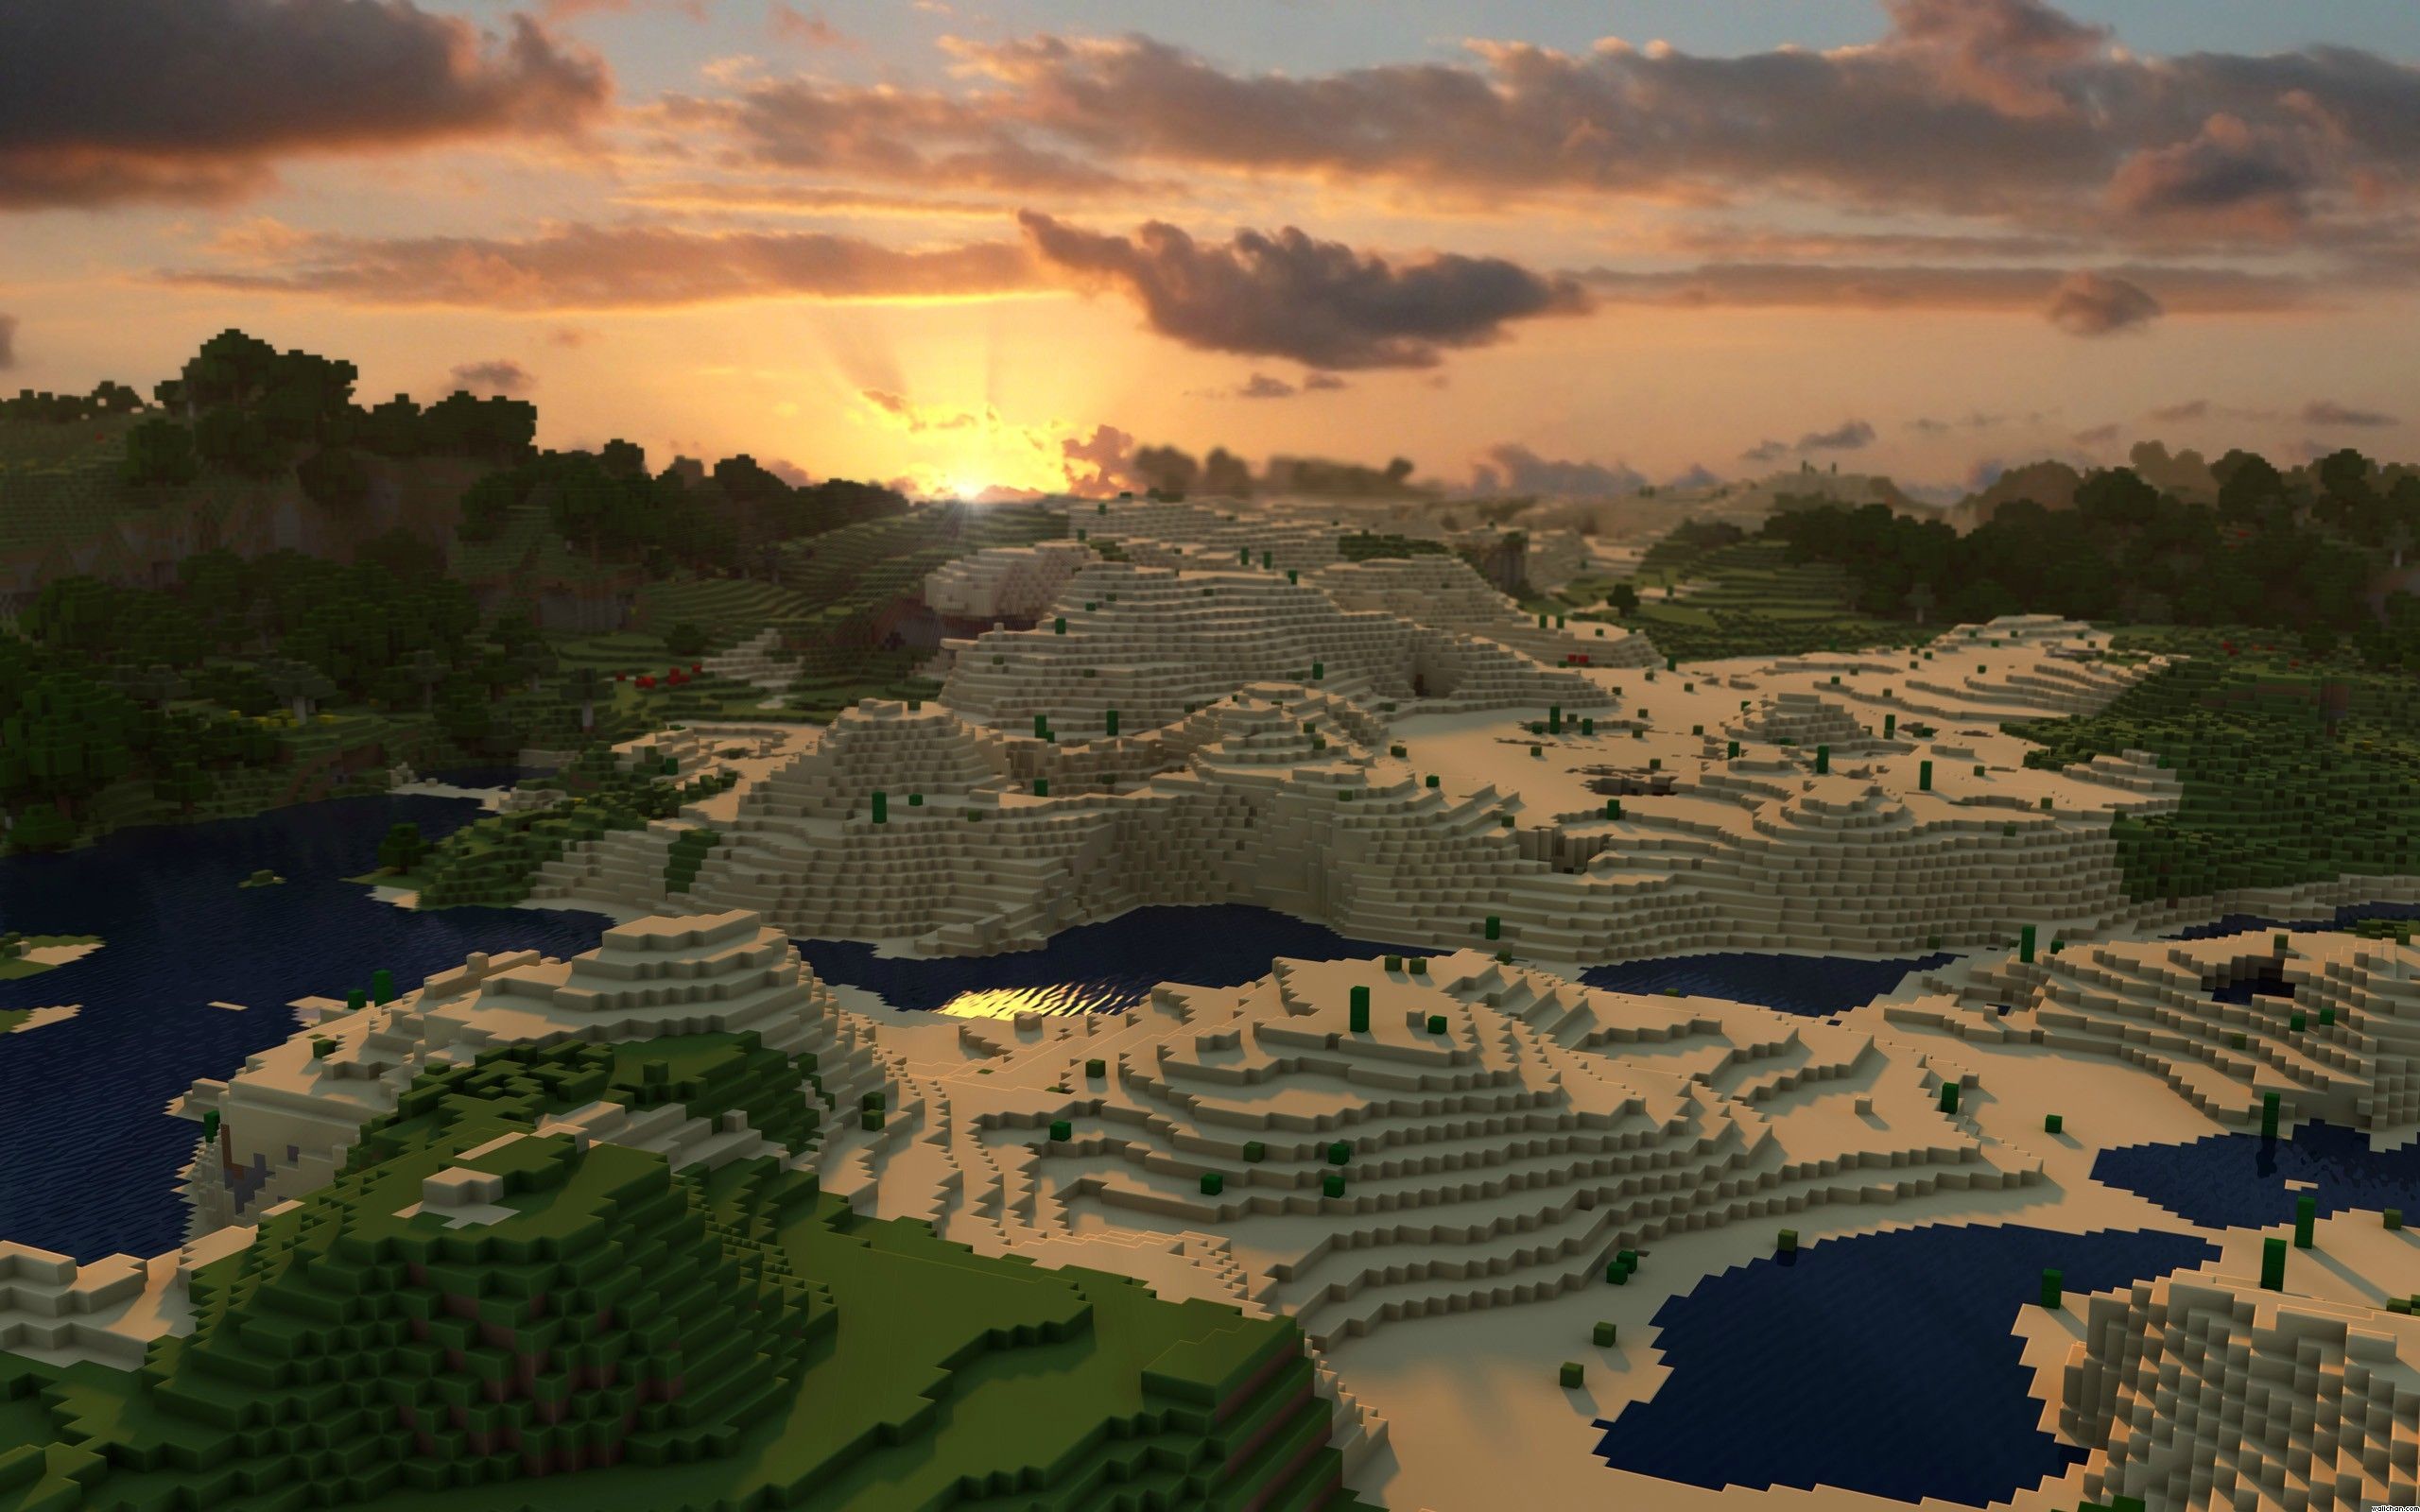 Minecraft Sunset. Minecraft wallpaper, Wallpaper background, Background